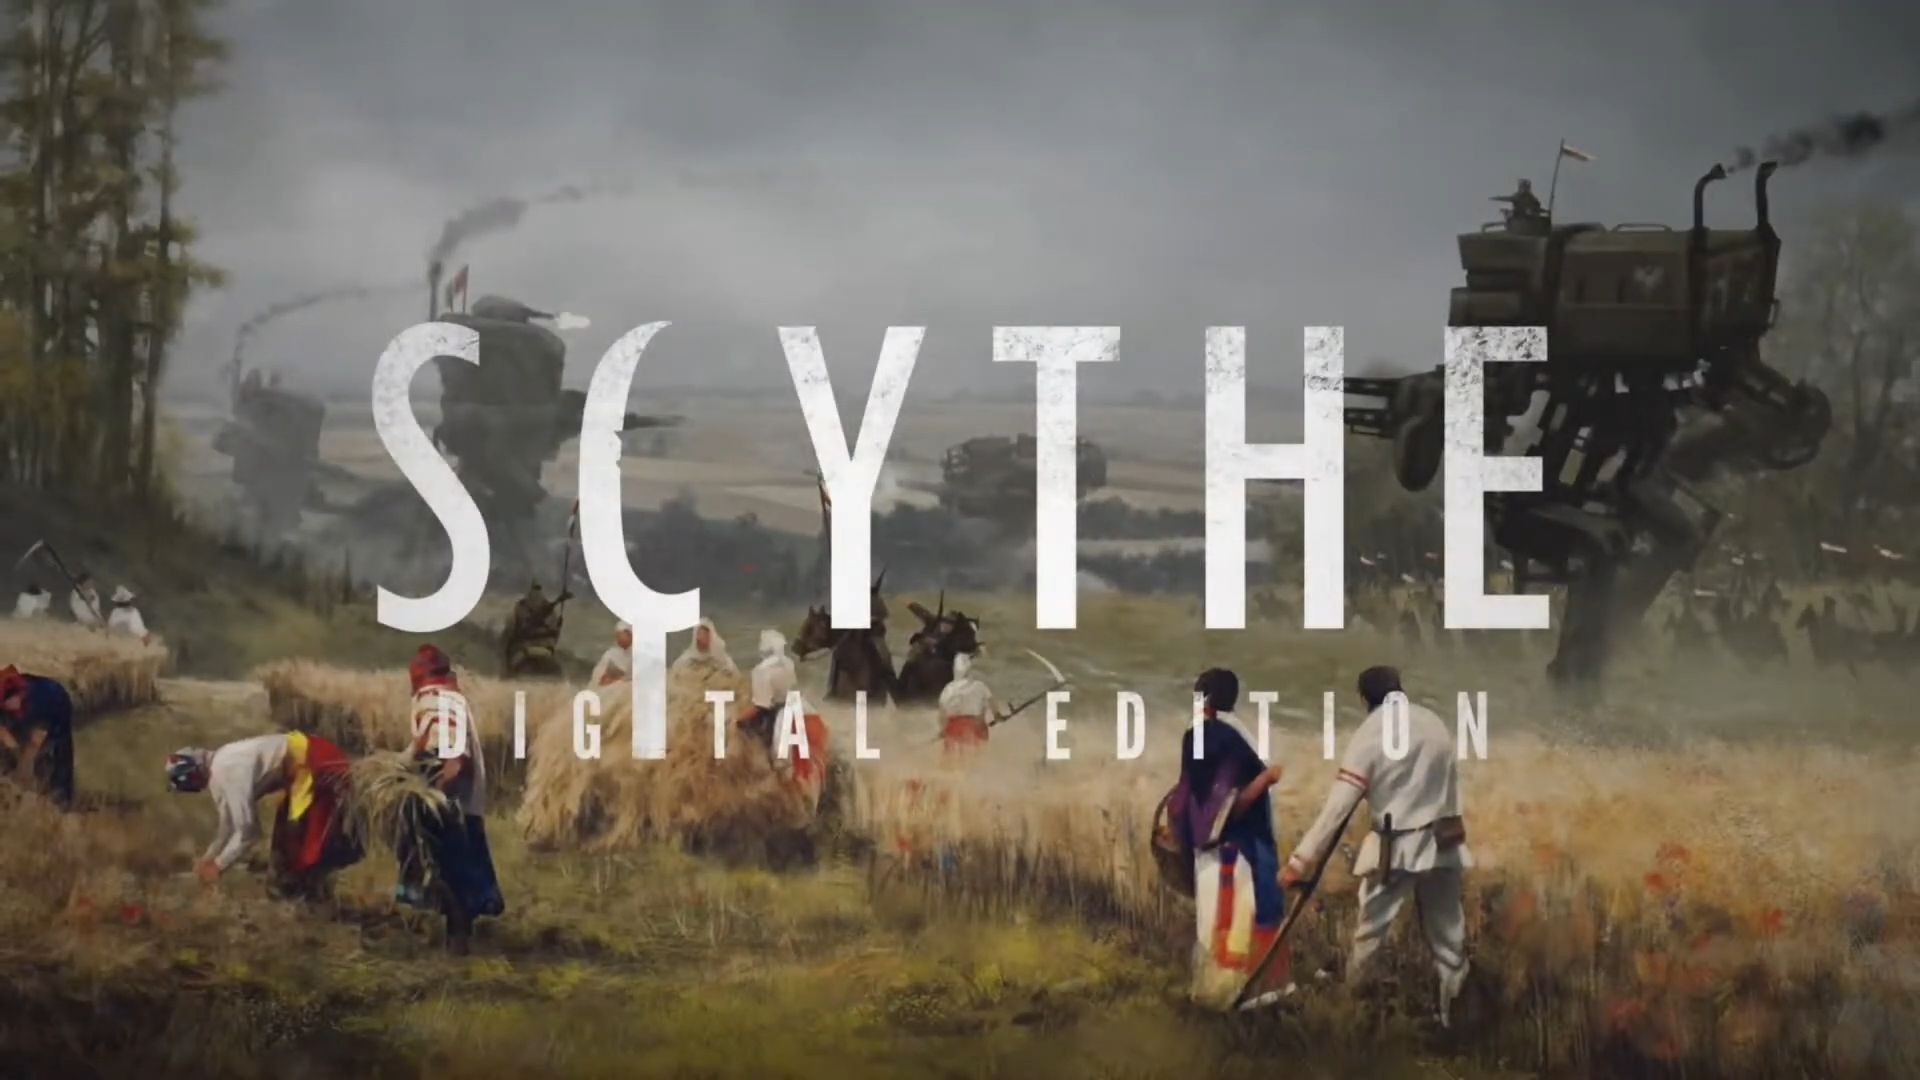 Scythe: Digital Edition captura de pantalla 1